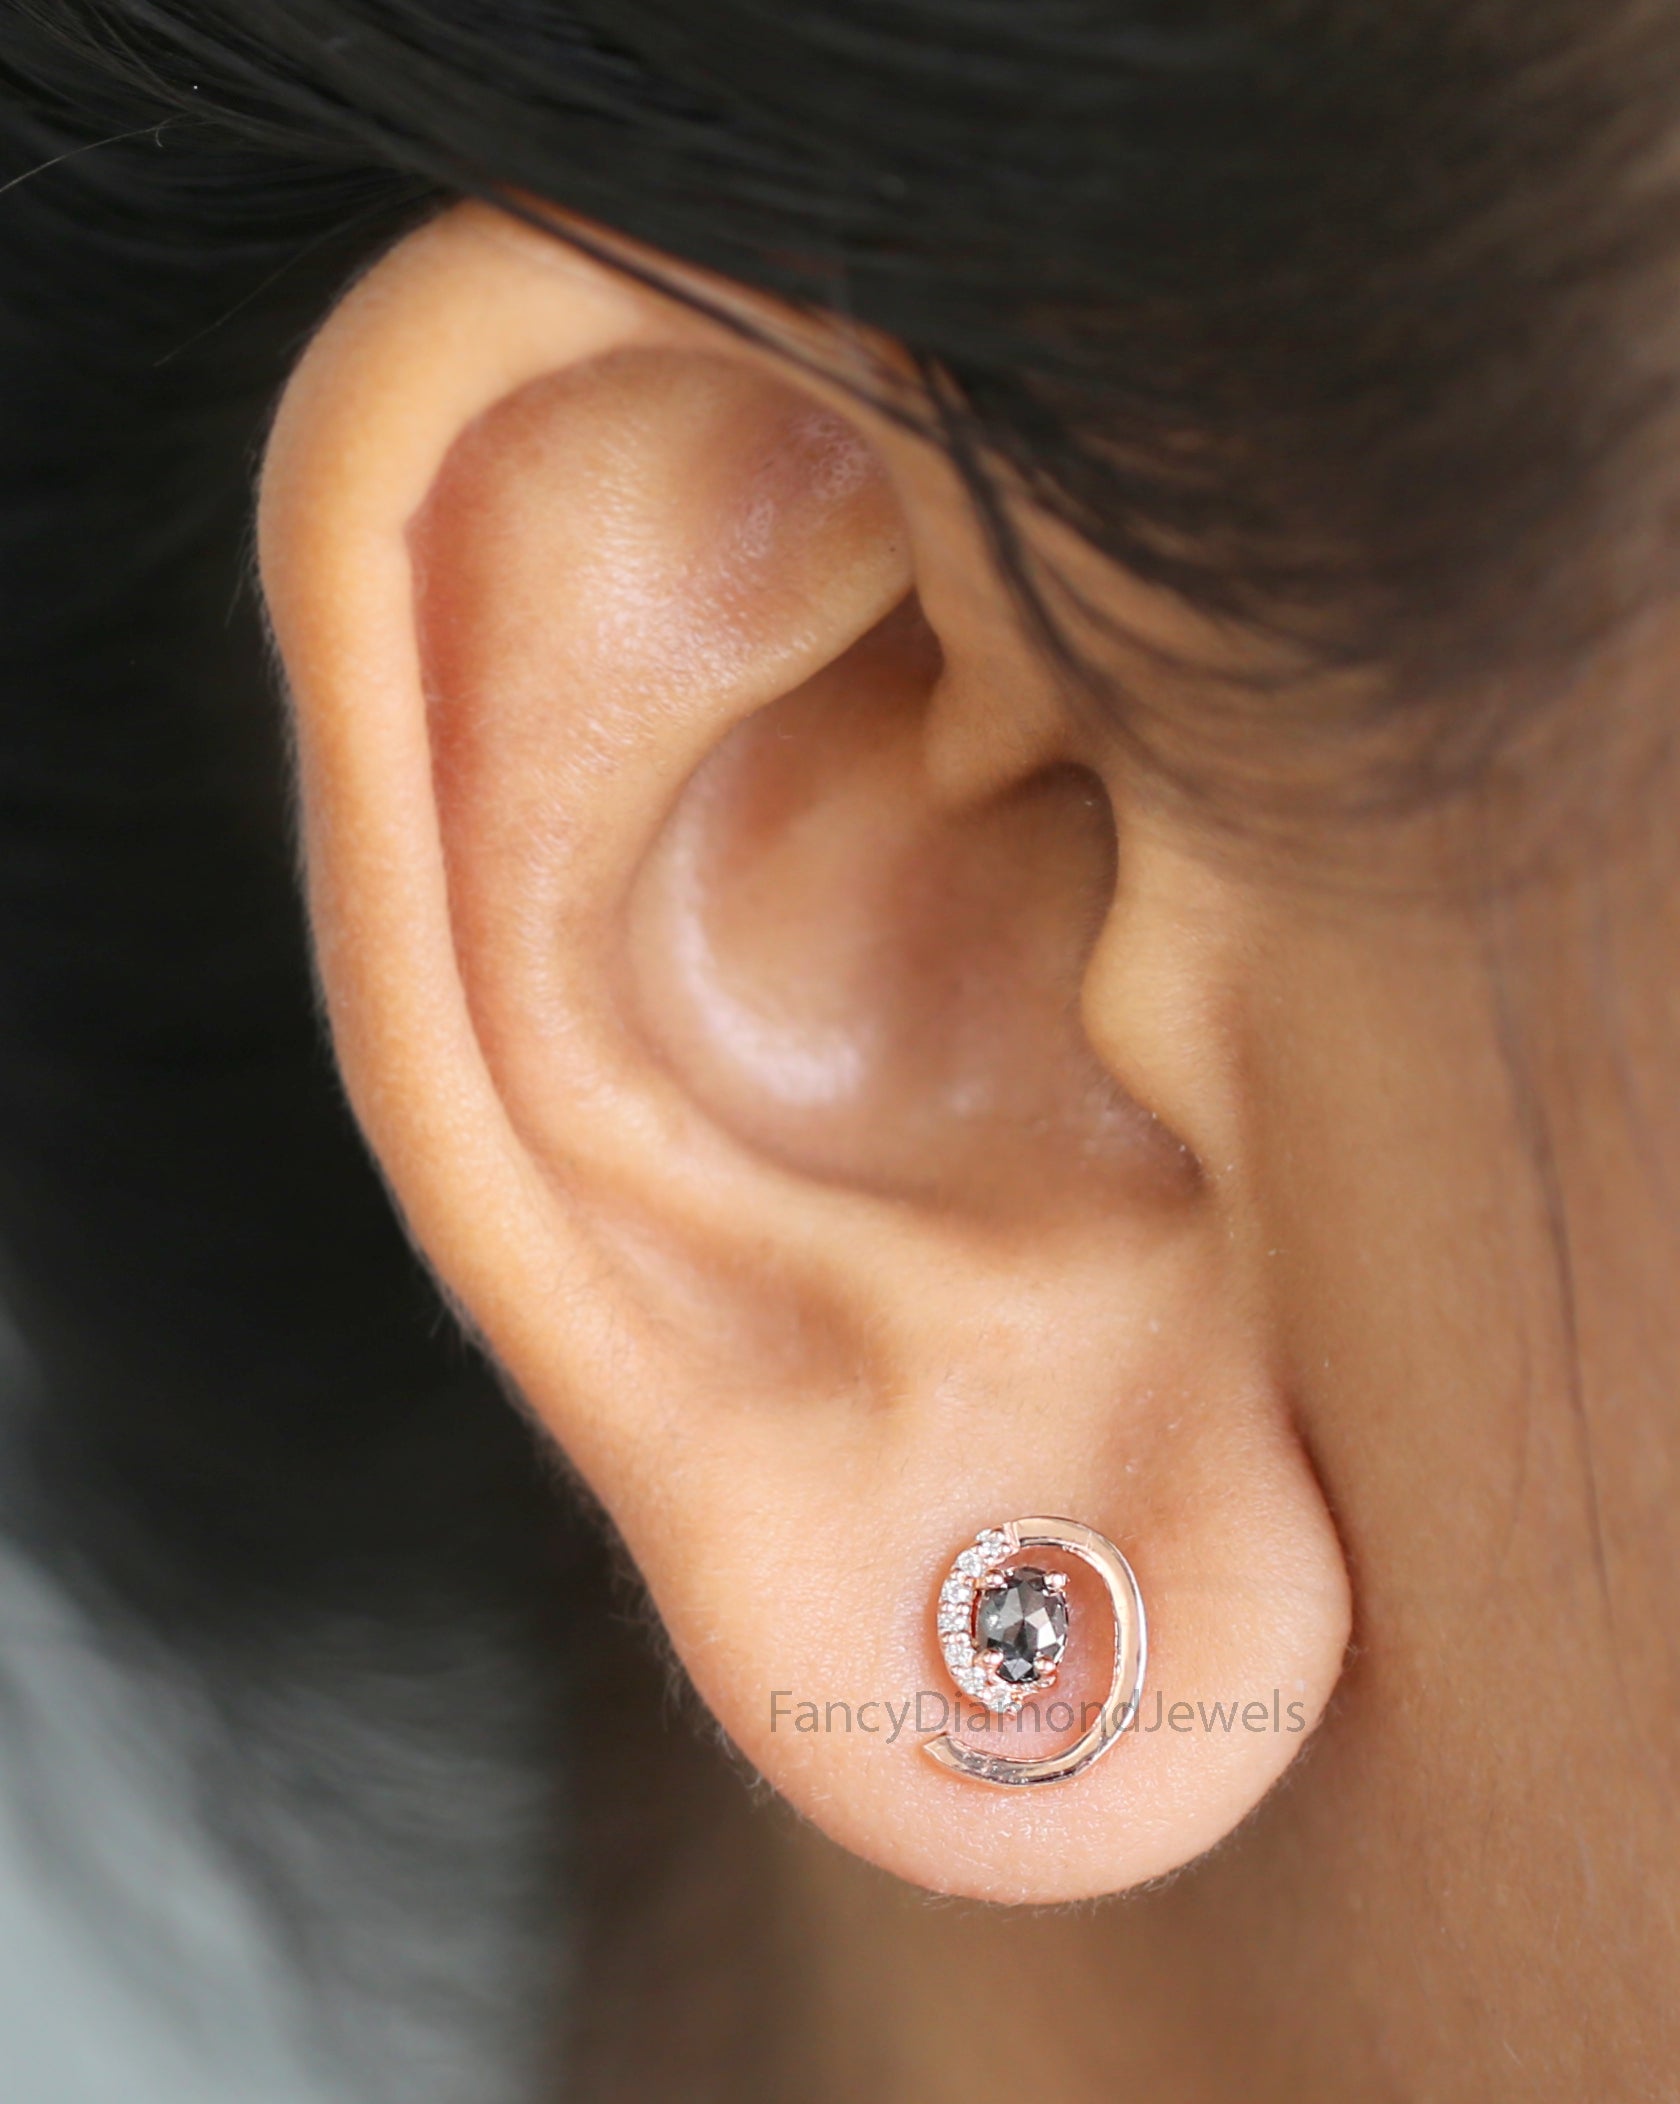 Oval Salt And Pepper Diamond Earring, Oval Shape Earring, Prong Earring, Engagement Earring, Earlobe Earrings, Earrings Jewelry KDN2293